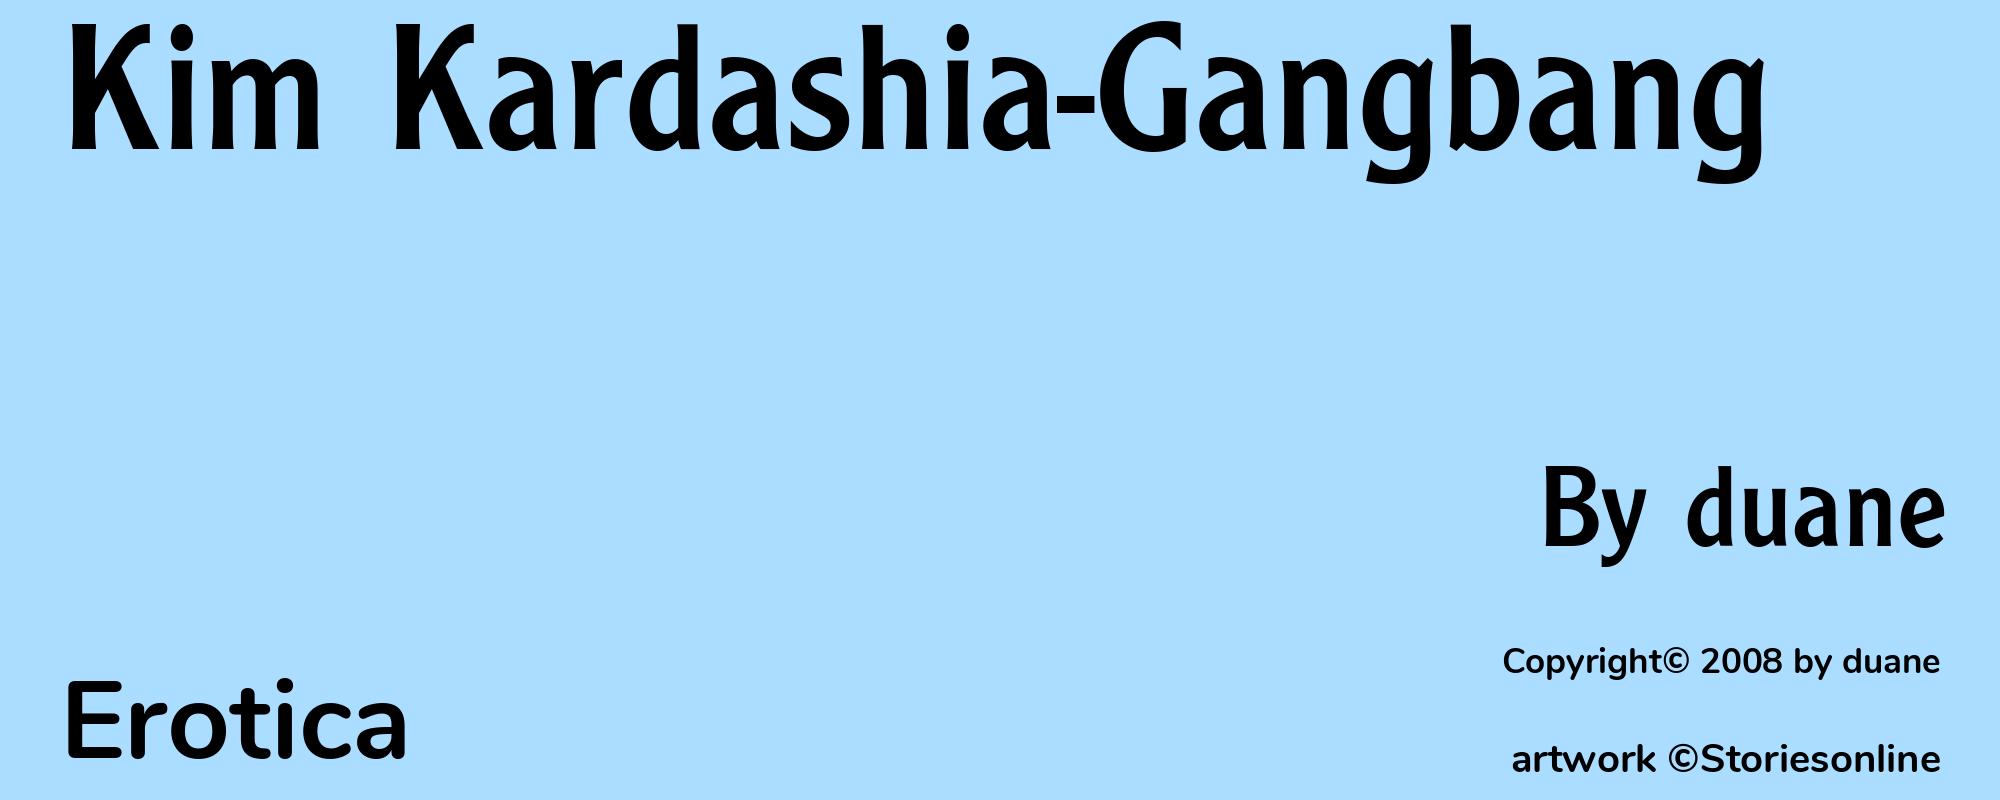 Kim Kardashia-Gangbang - Cover